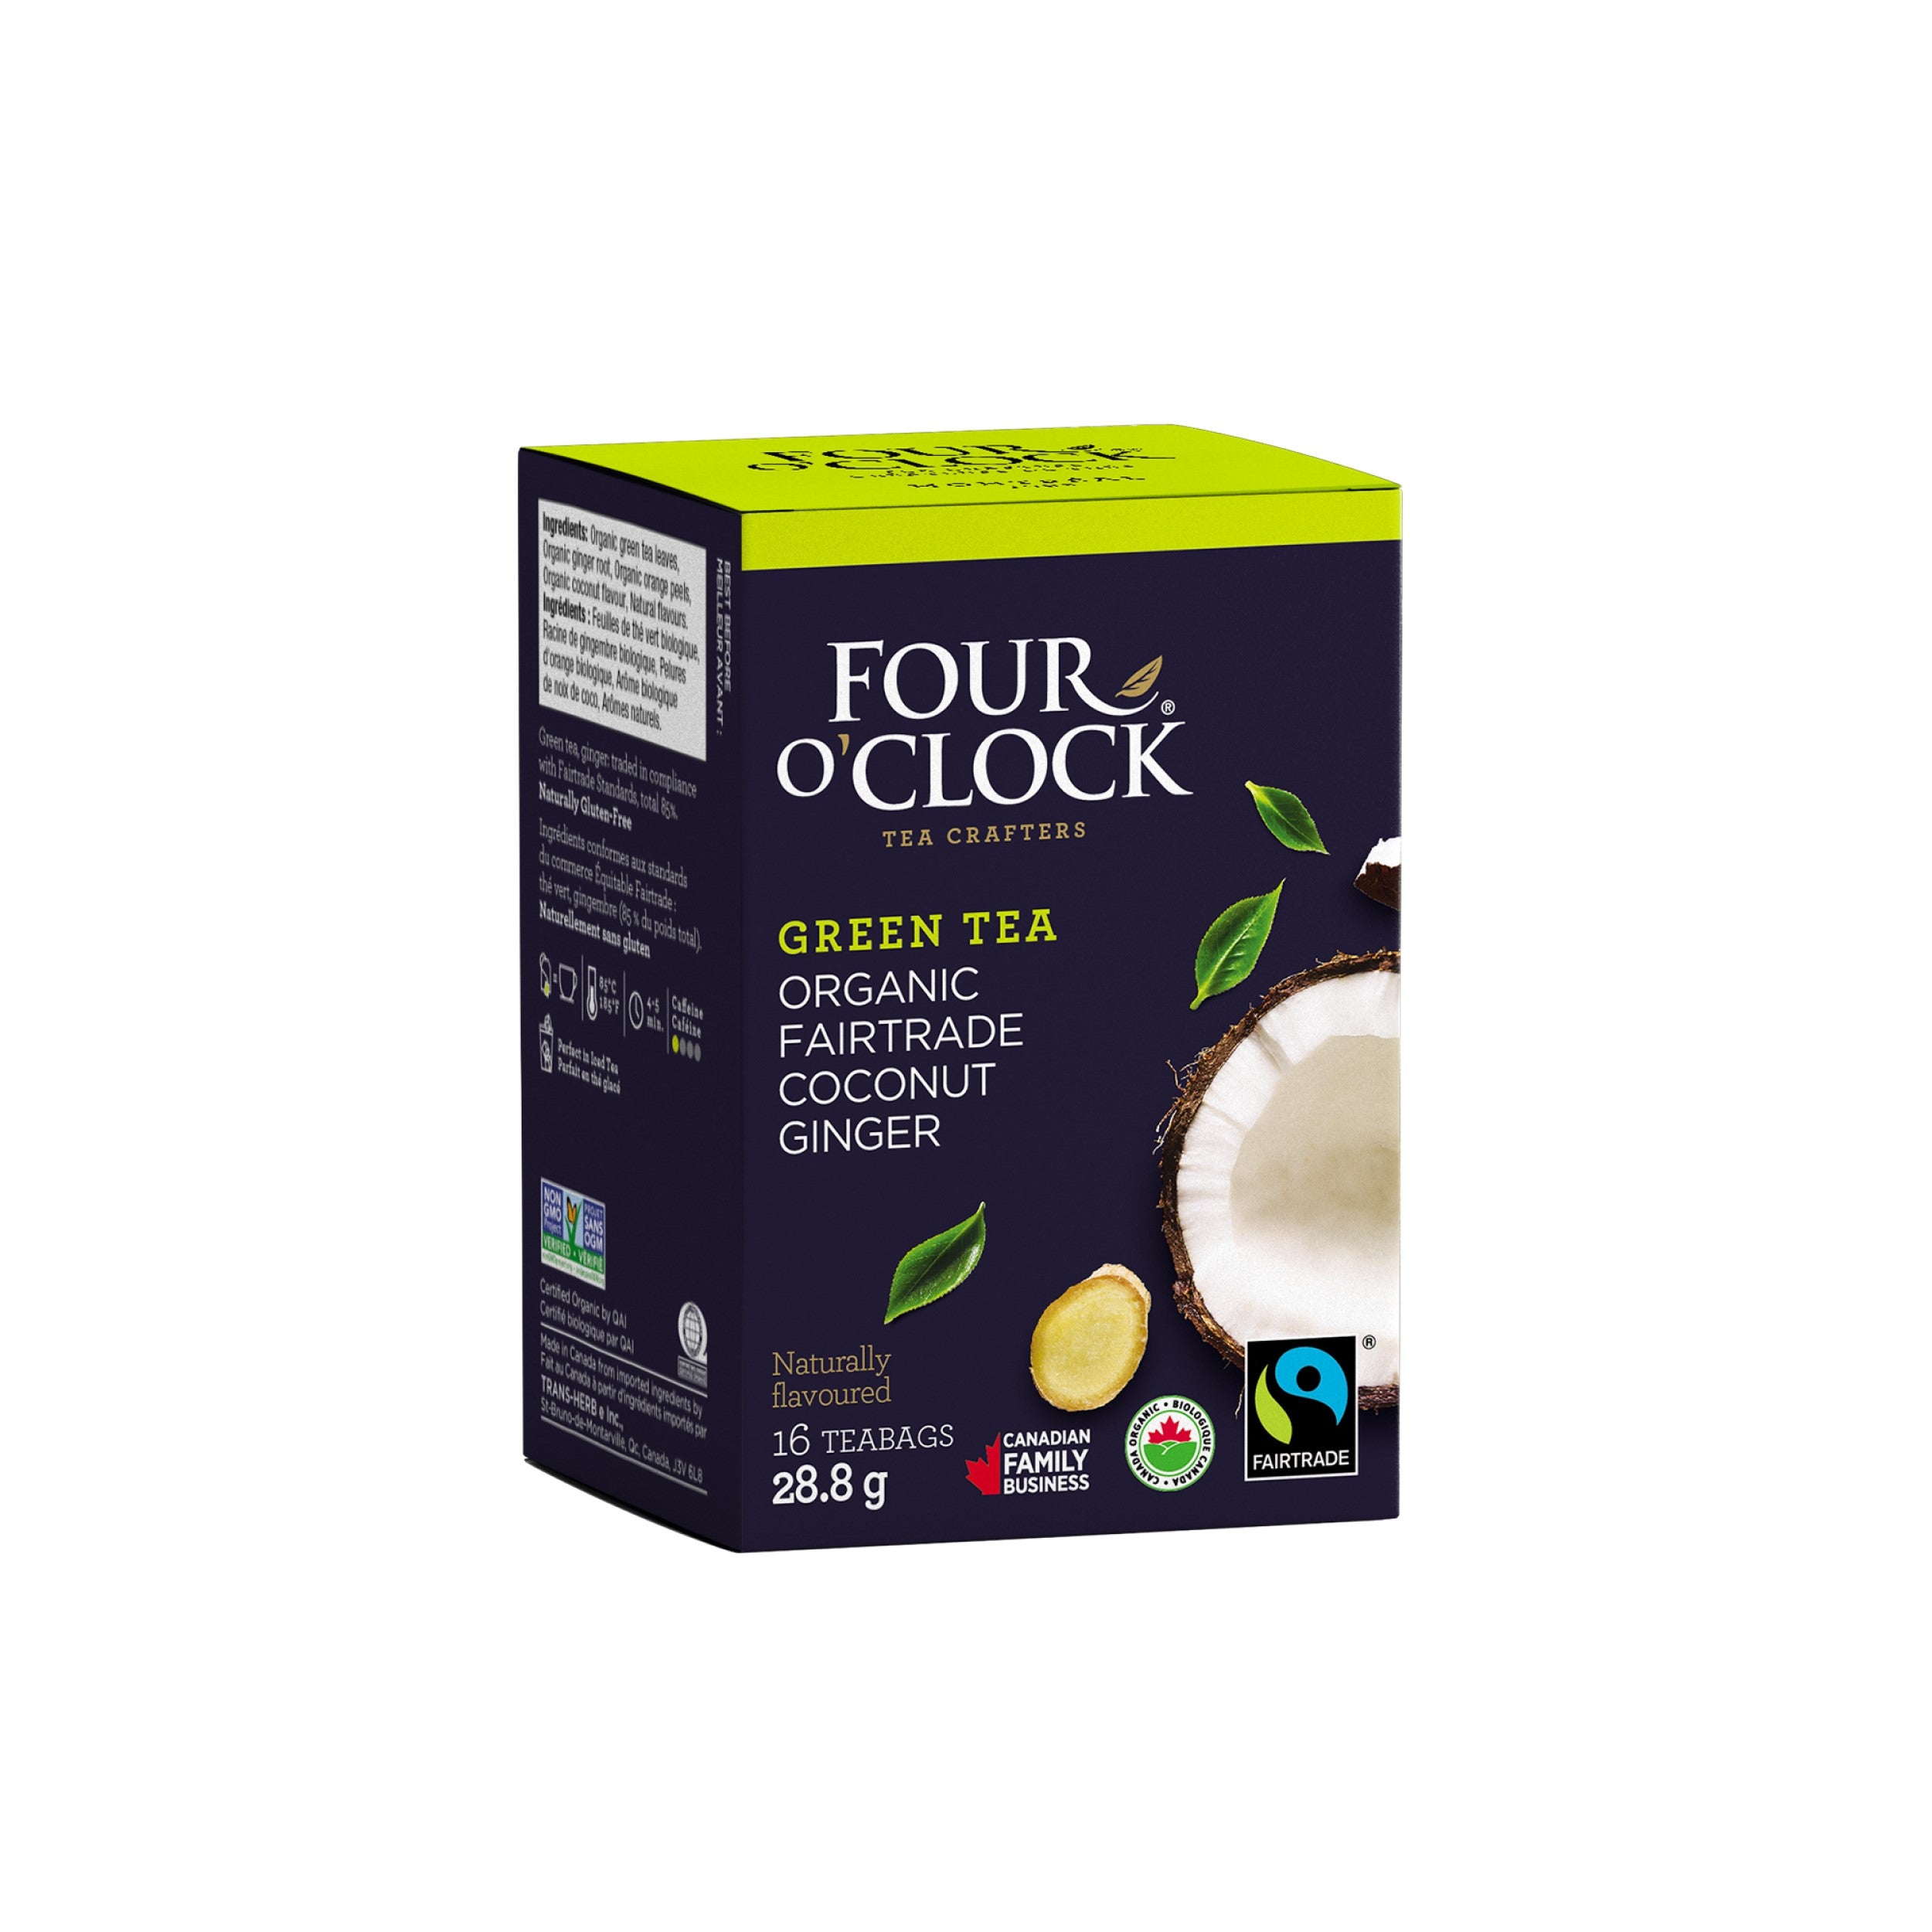 Coconut Ginger Organic Fairtrade Green Tea